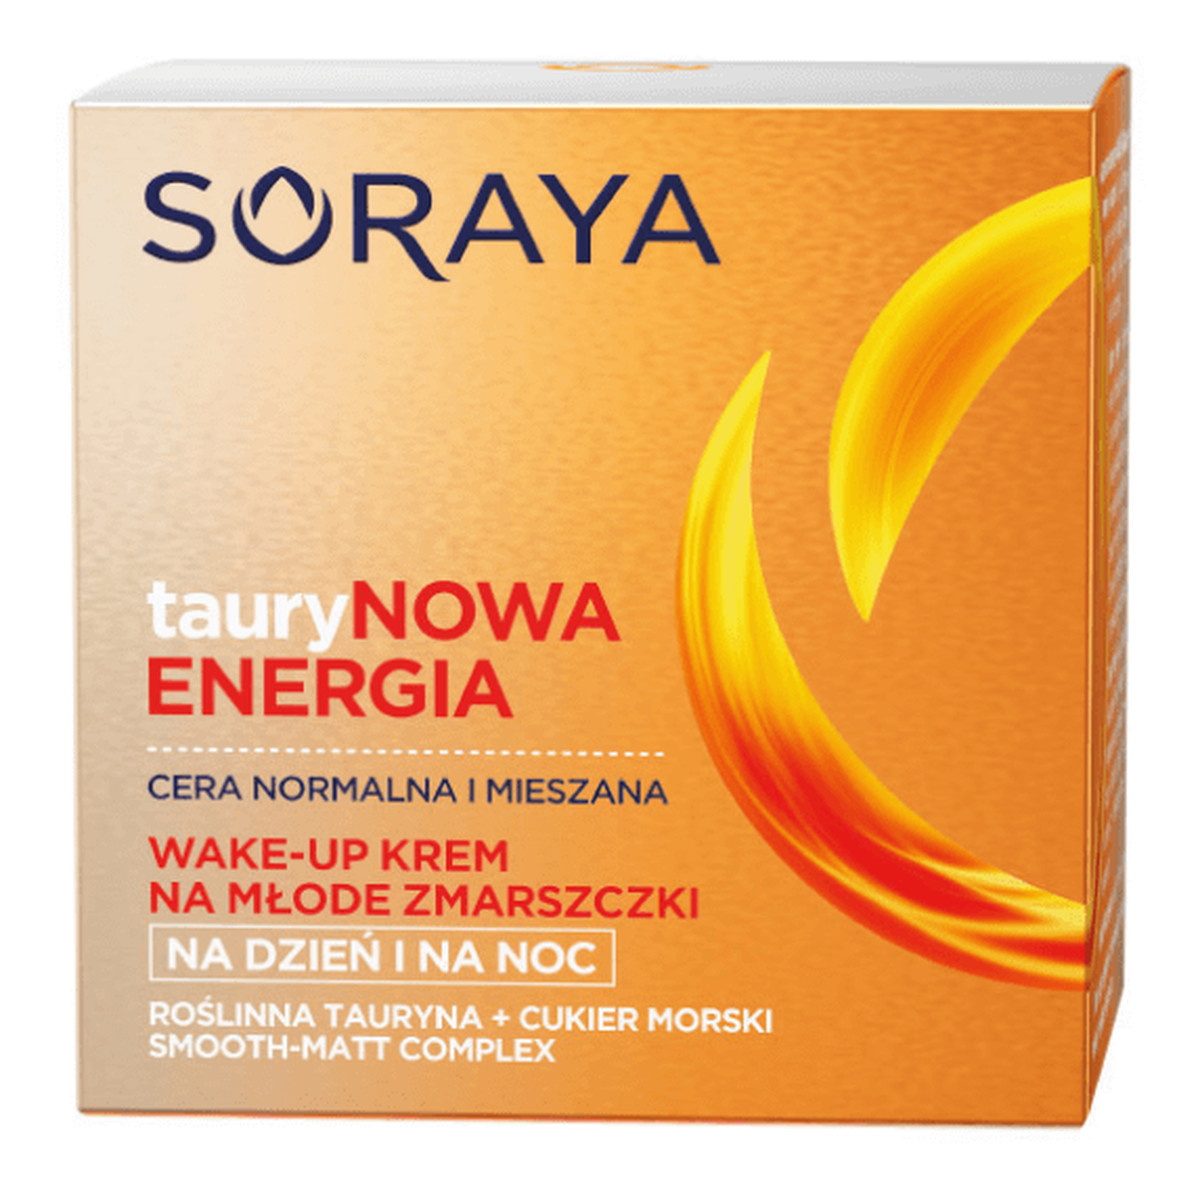 Soraya Taurynowa Energia Wake-Up, Krem przeciwzmarszczkowy cera normalna i mieszana na dzień na noc 50ml